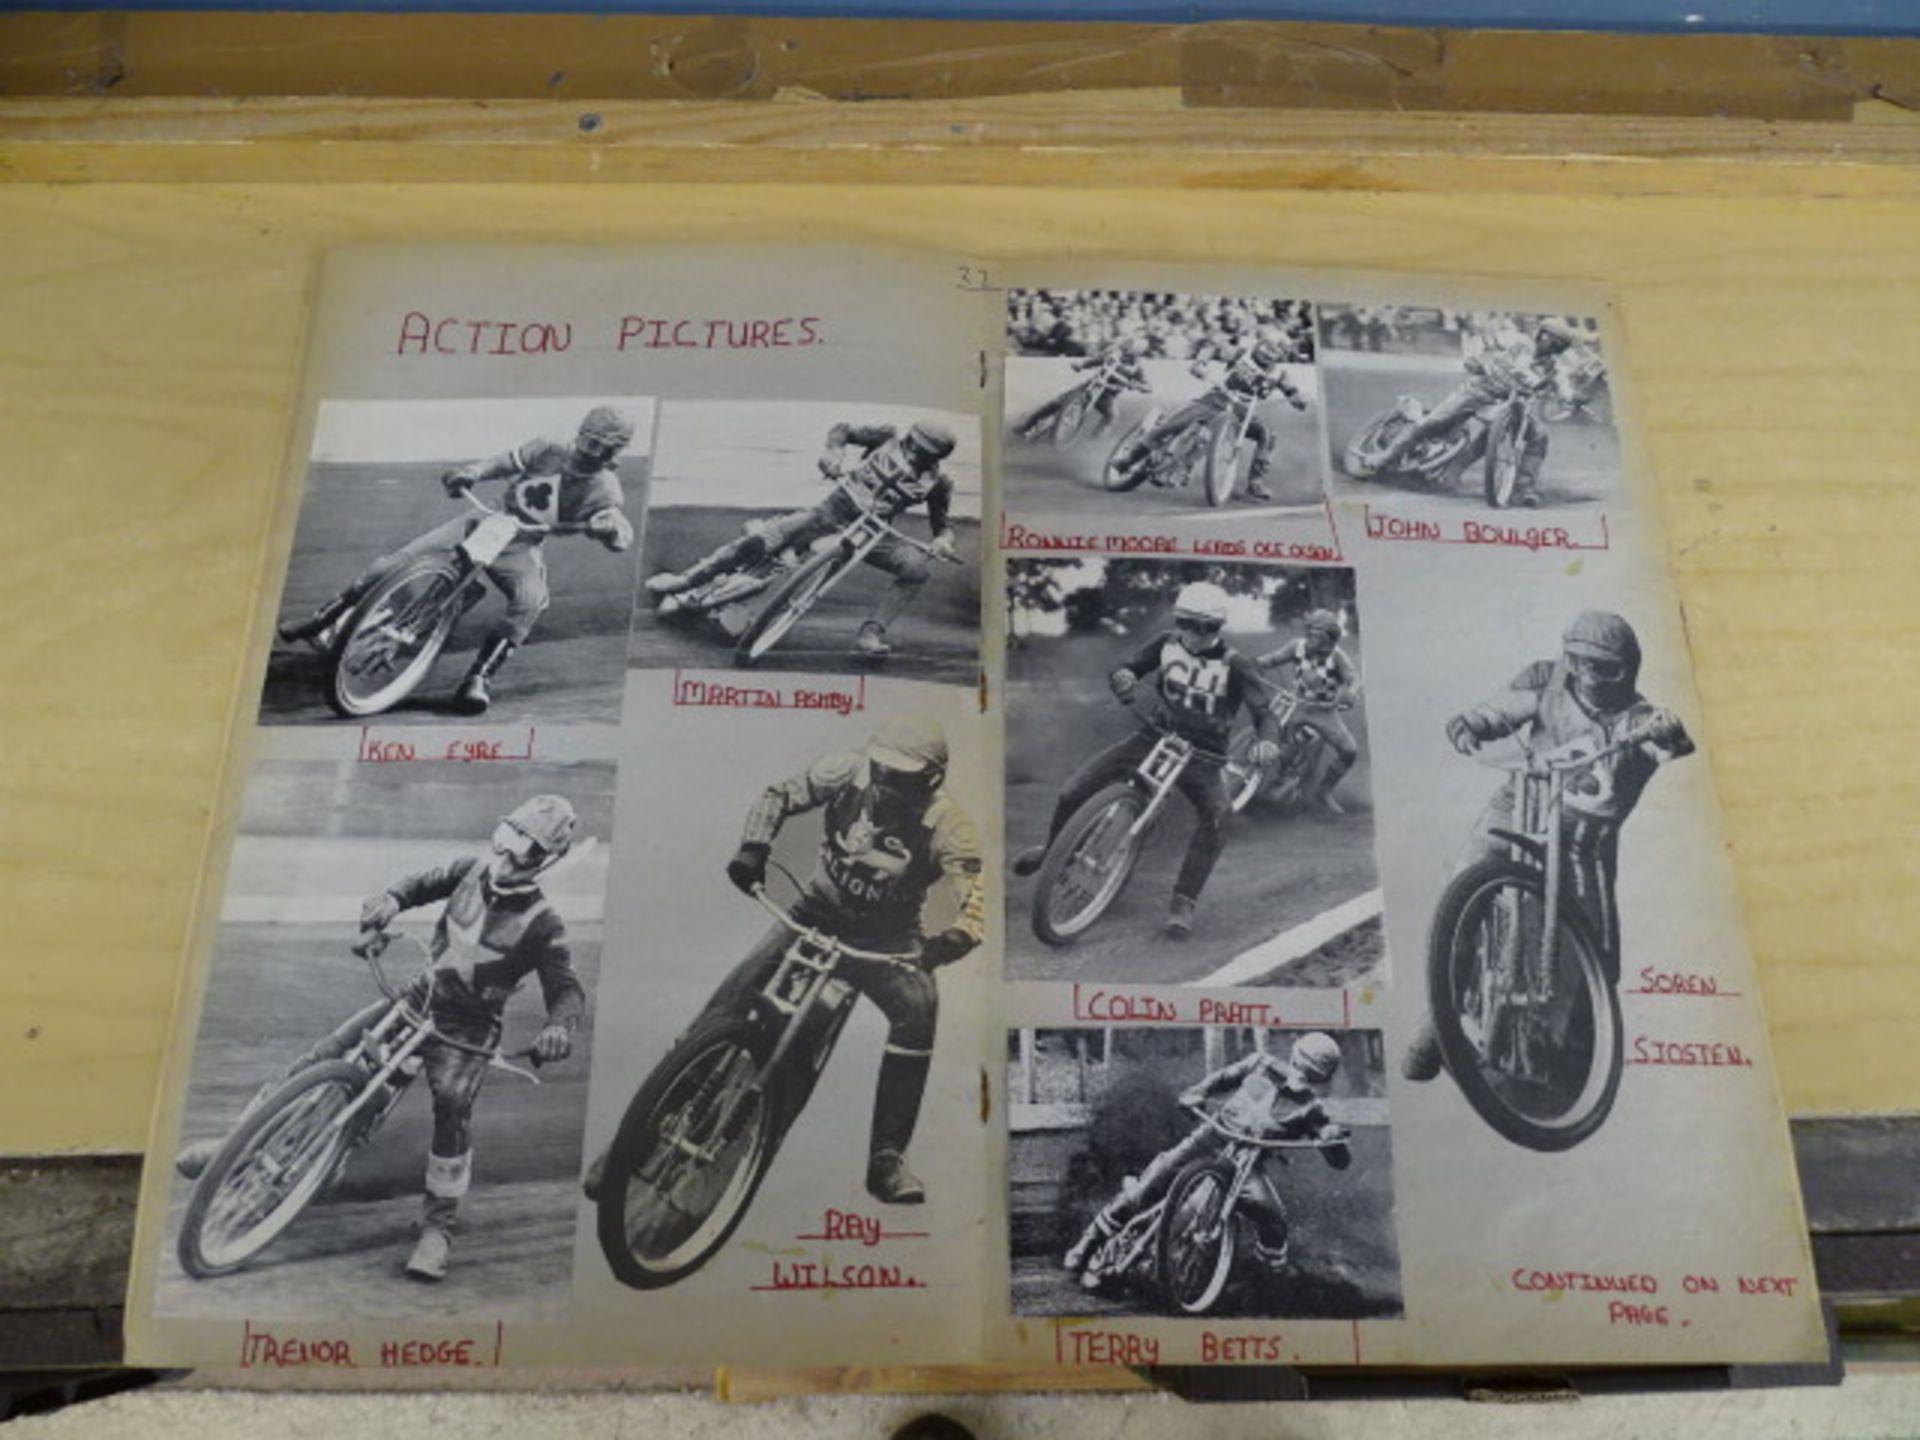 1971 Speedway scrapbook - Image 13 of 21